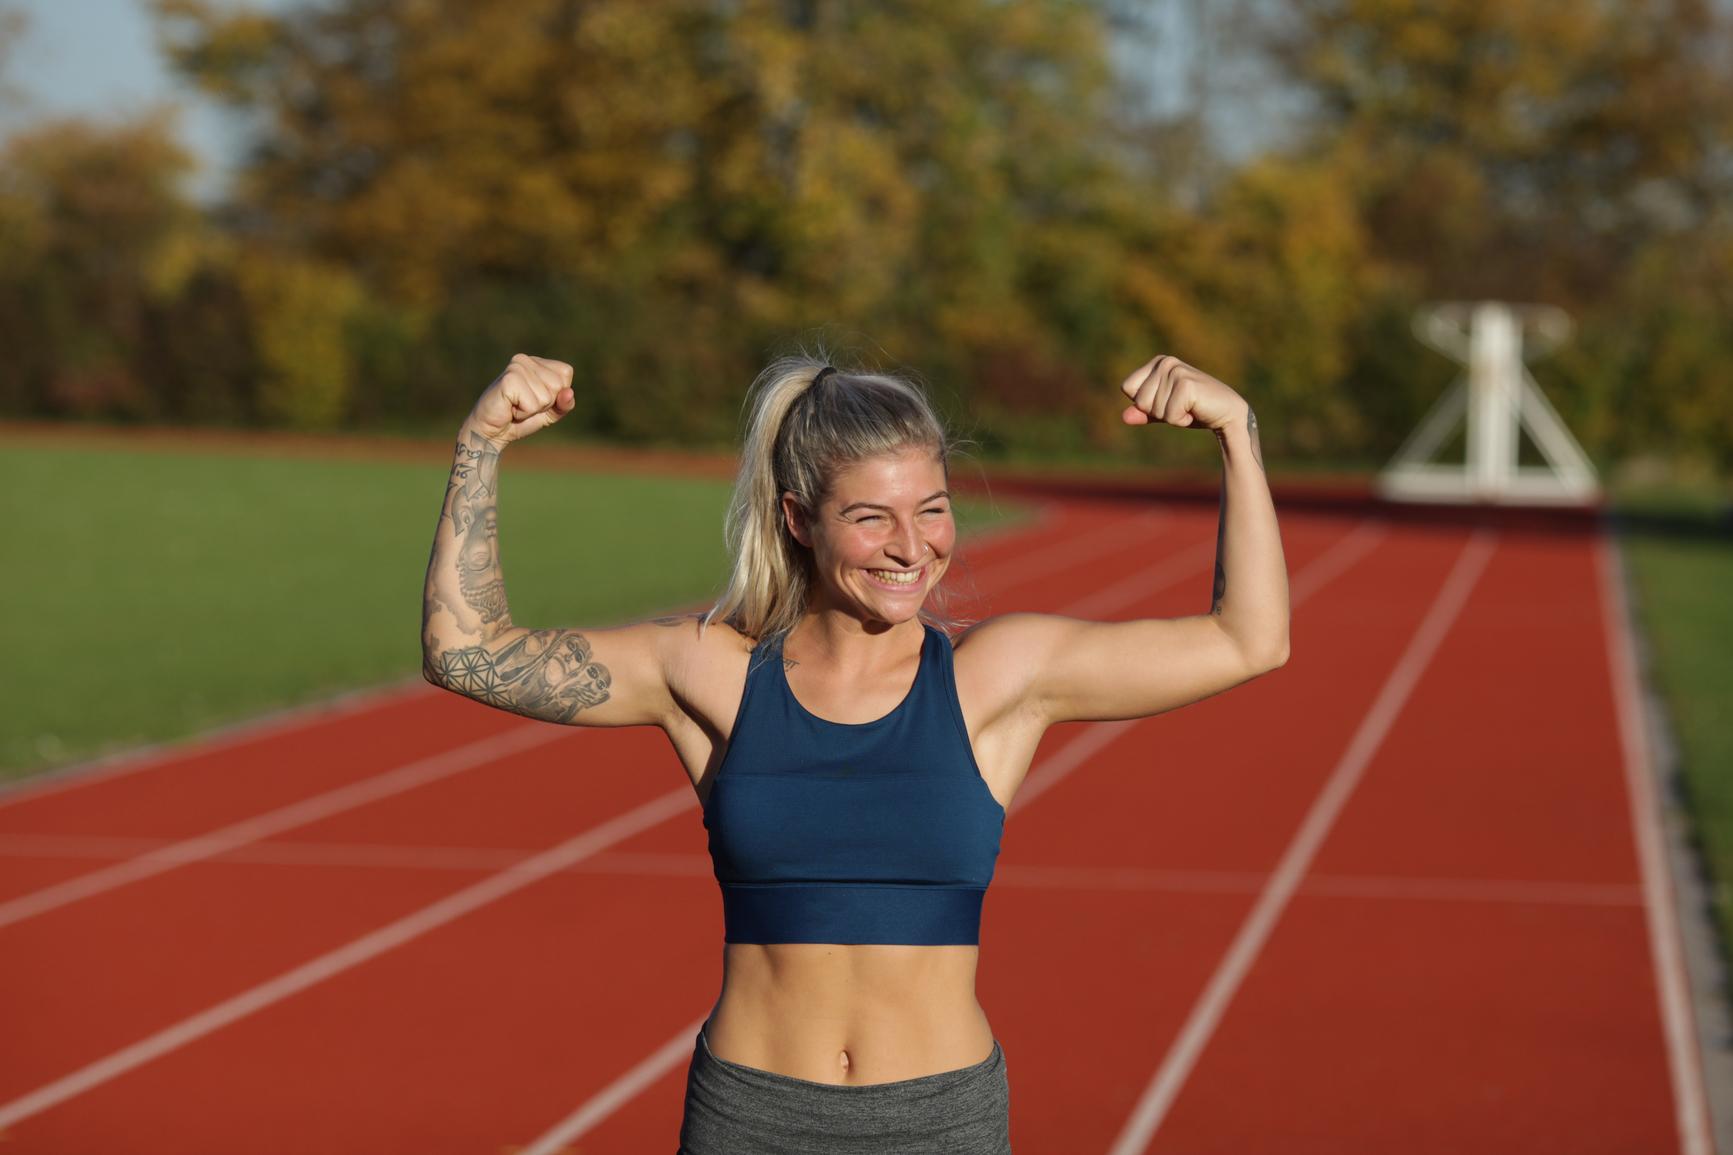 Massagepistole: Athletische Frau zeigt ihre Muskeln auf dem Sportfeld